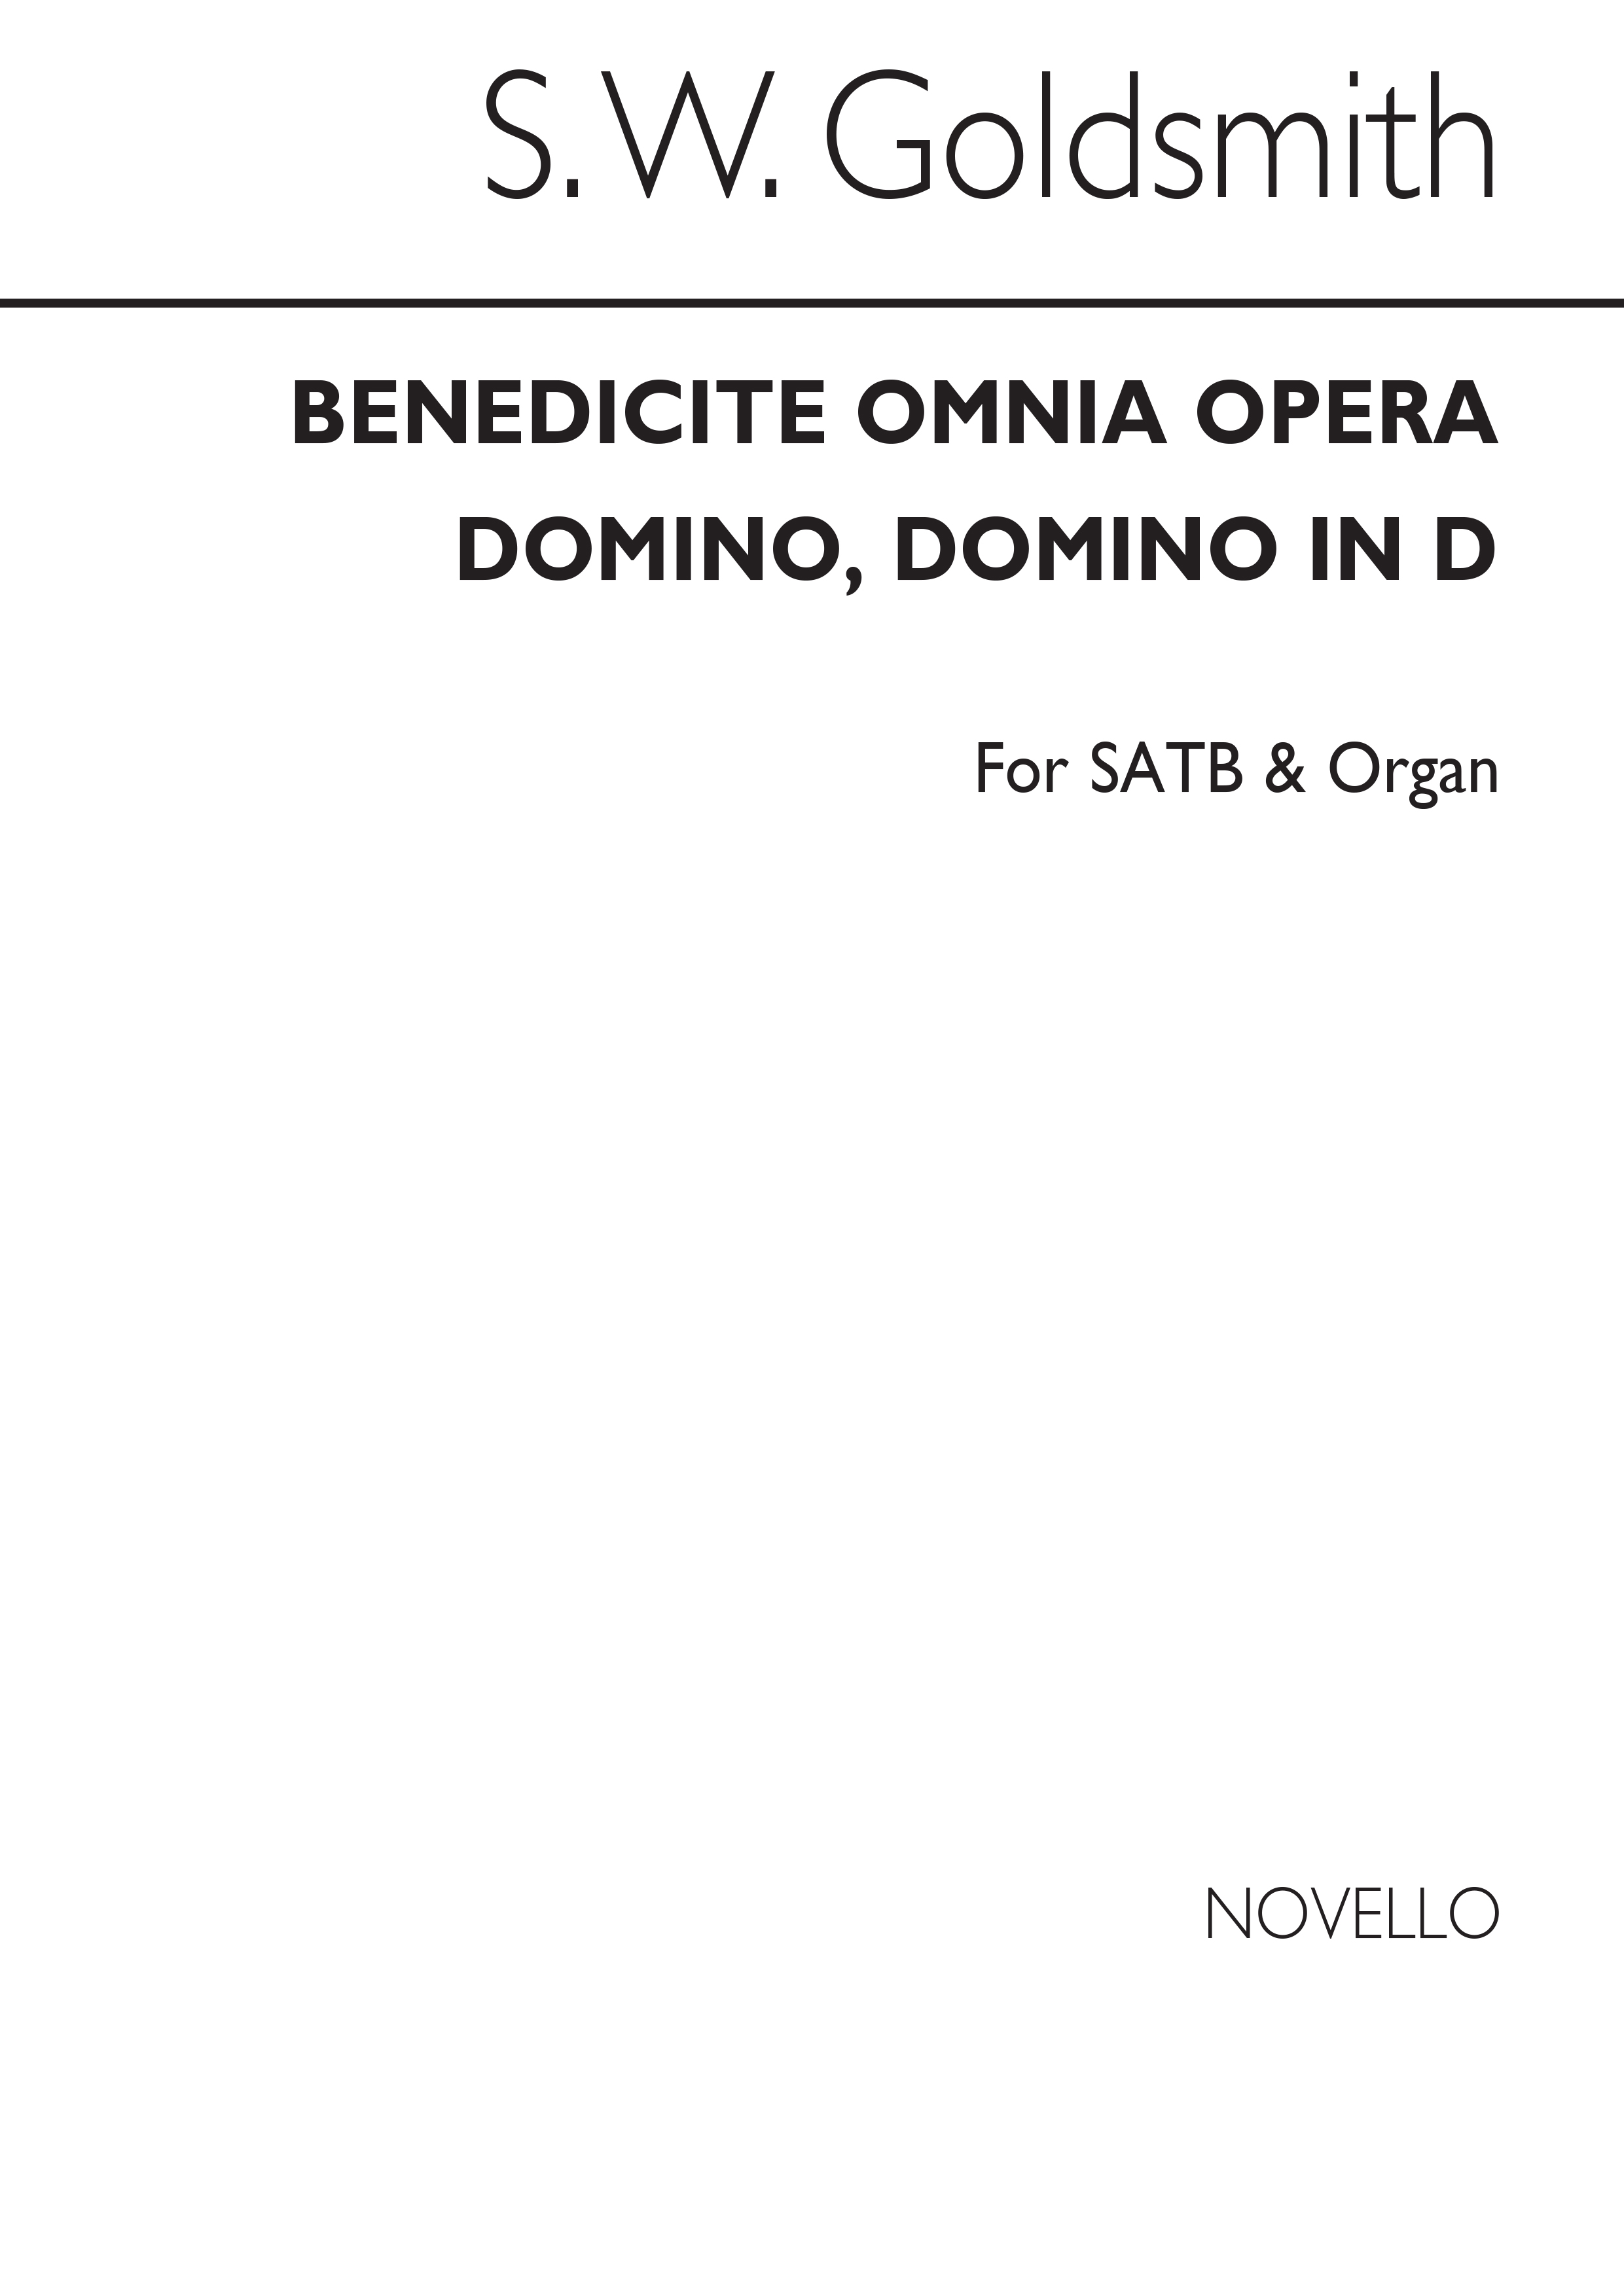 S.W. Goldsmith: Benedicite, Omnia Opera Satb/Organ